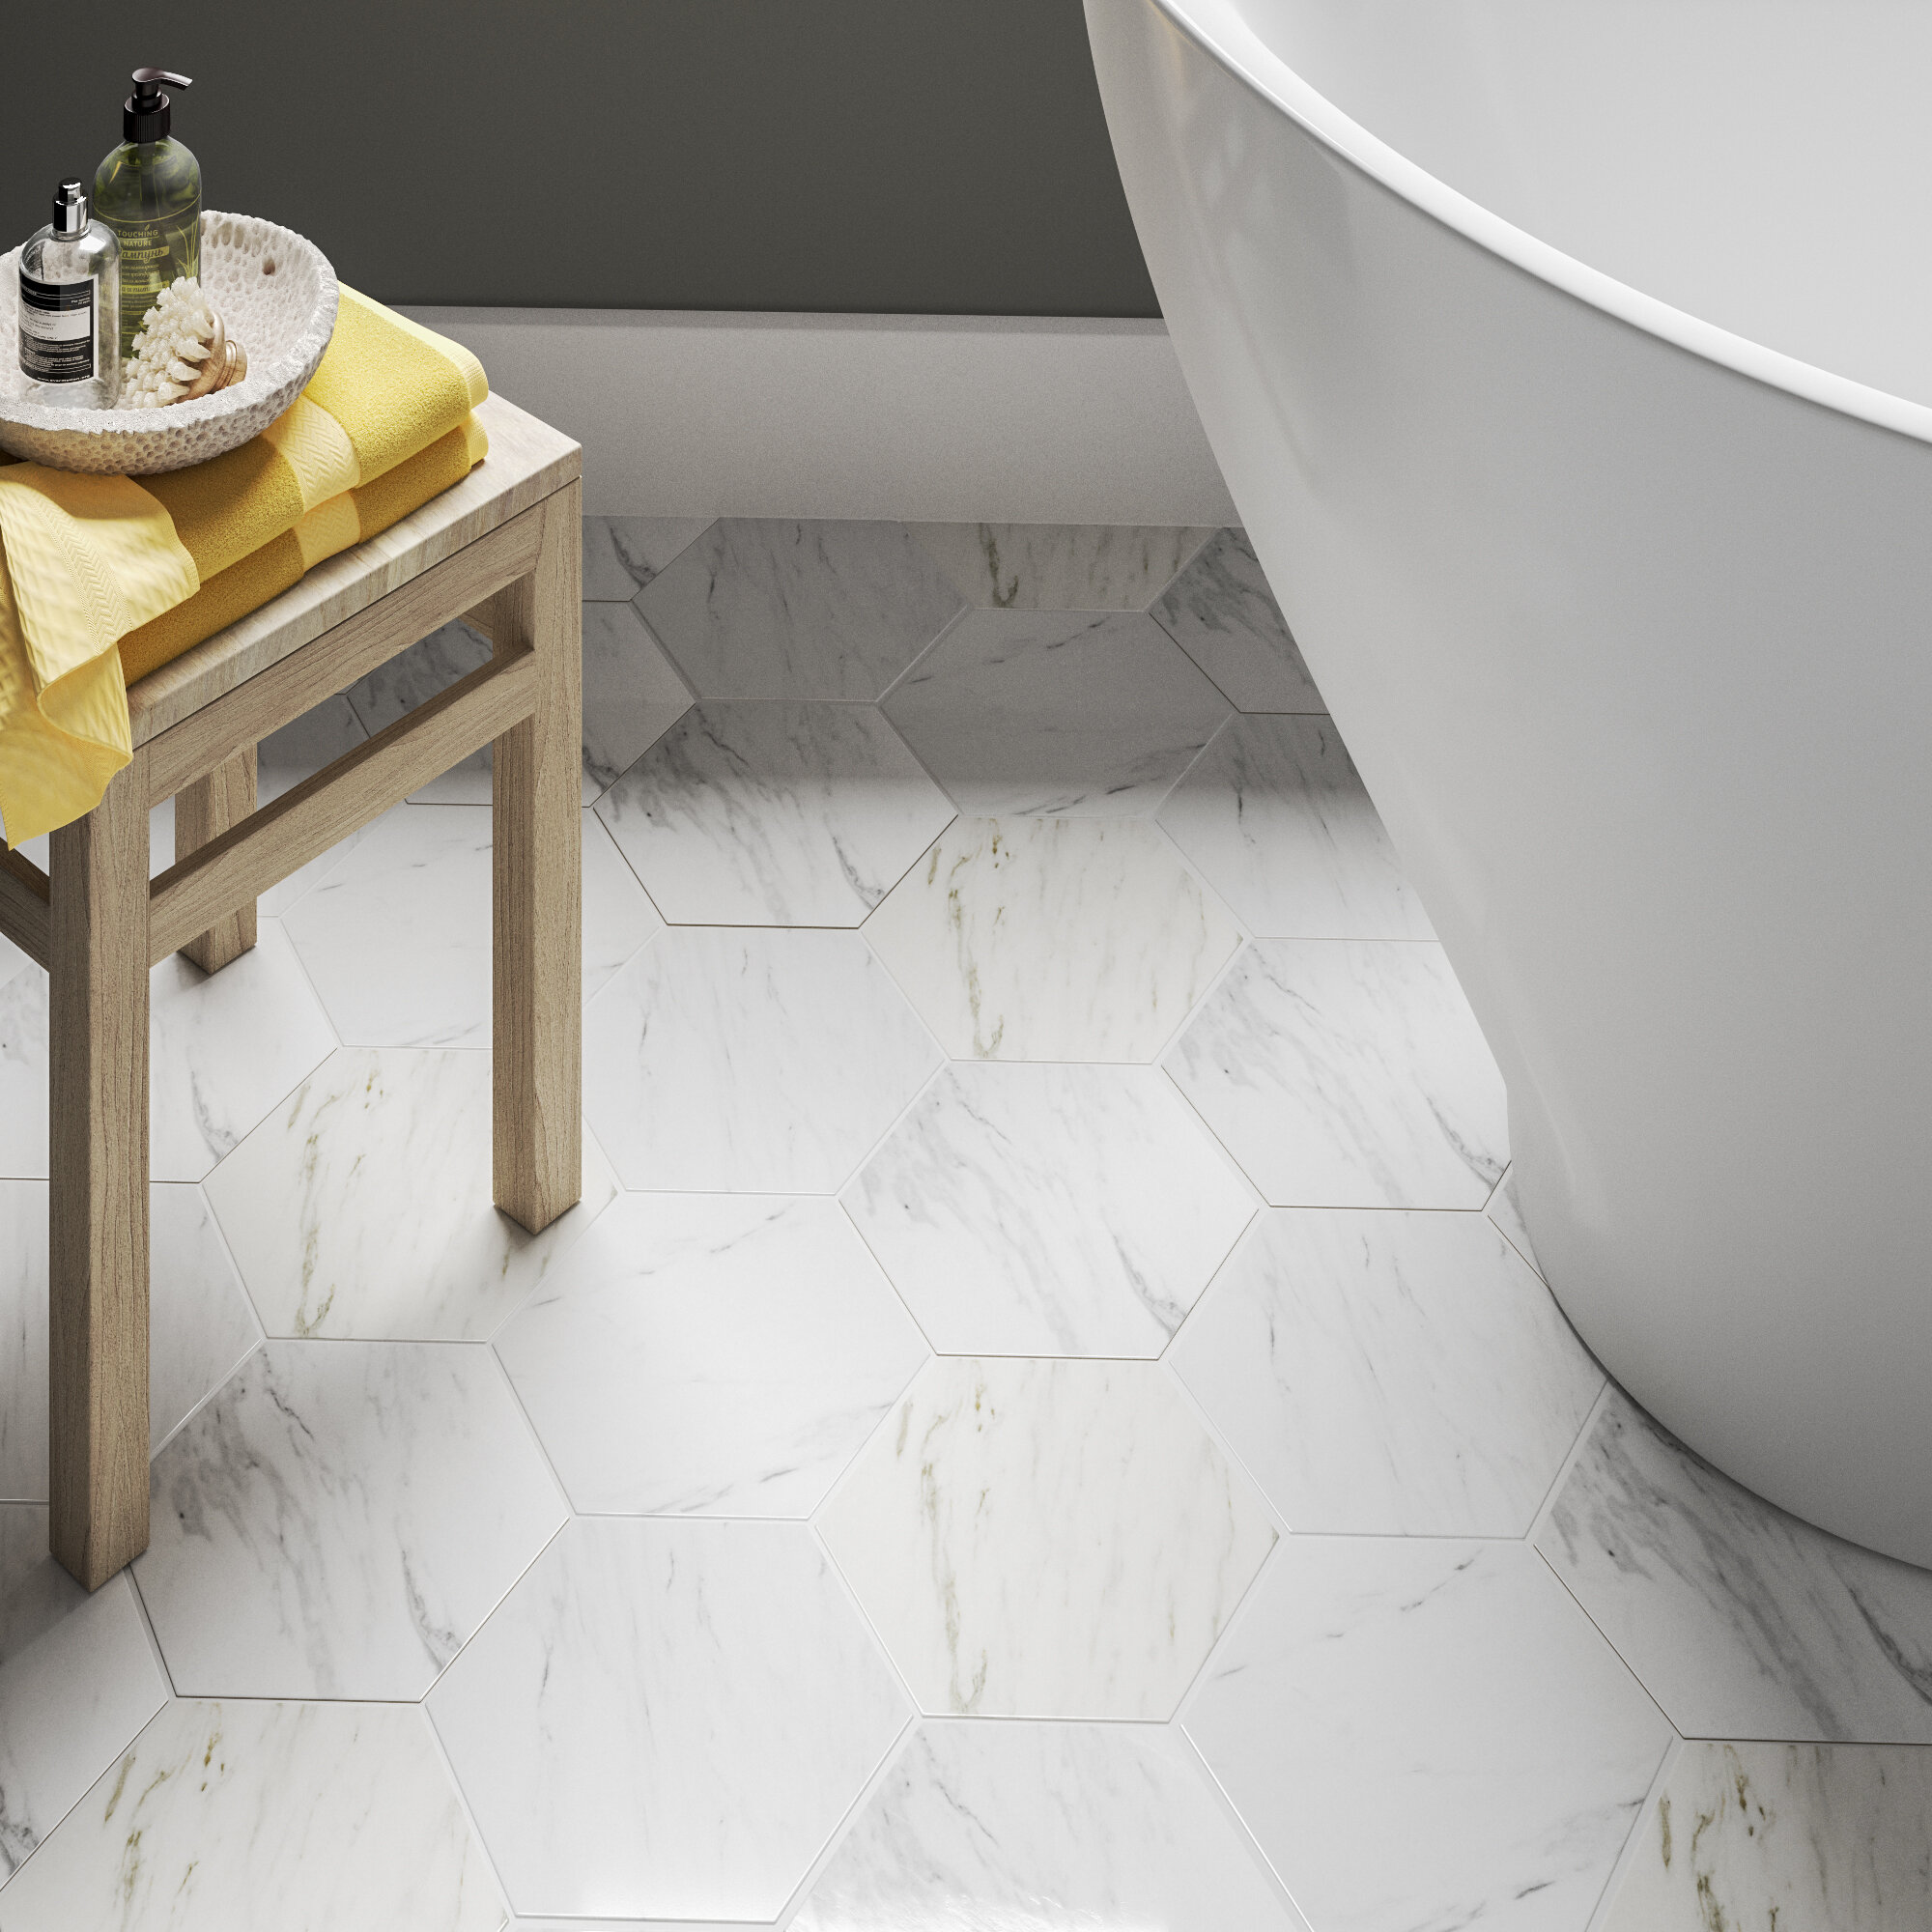 Elitetile Eterno 9 X 10 Porcelain Stone Look Wall Floor Tile Reviews Wayfair